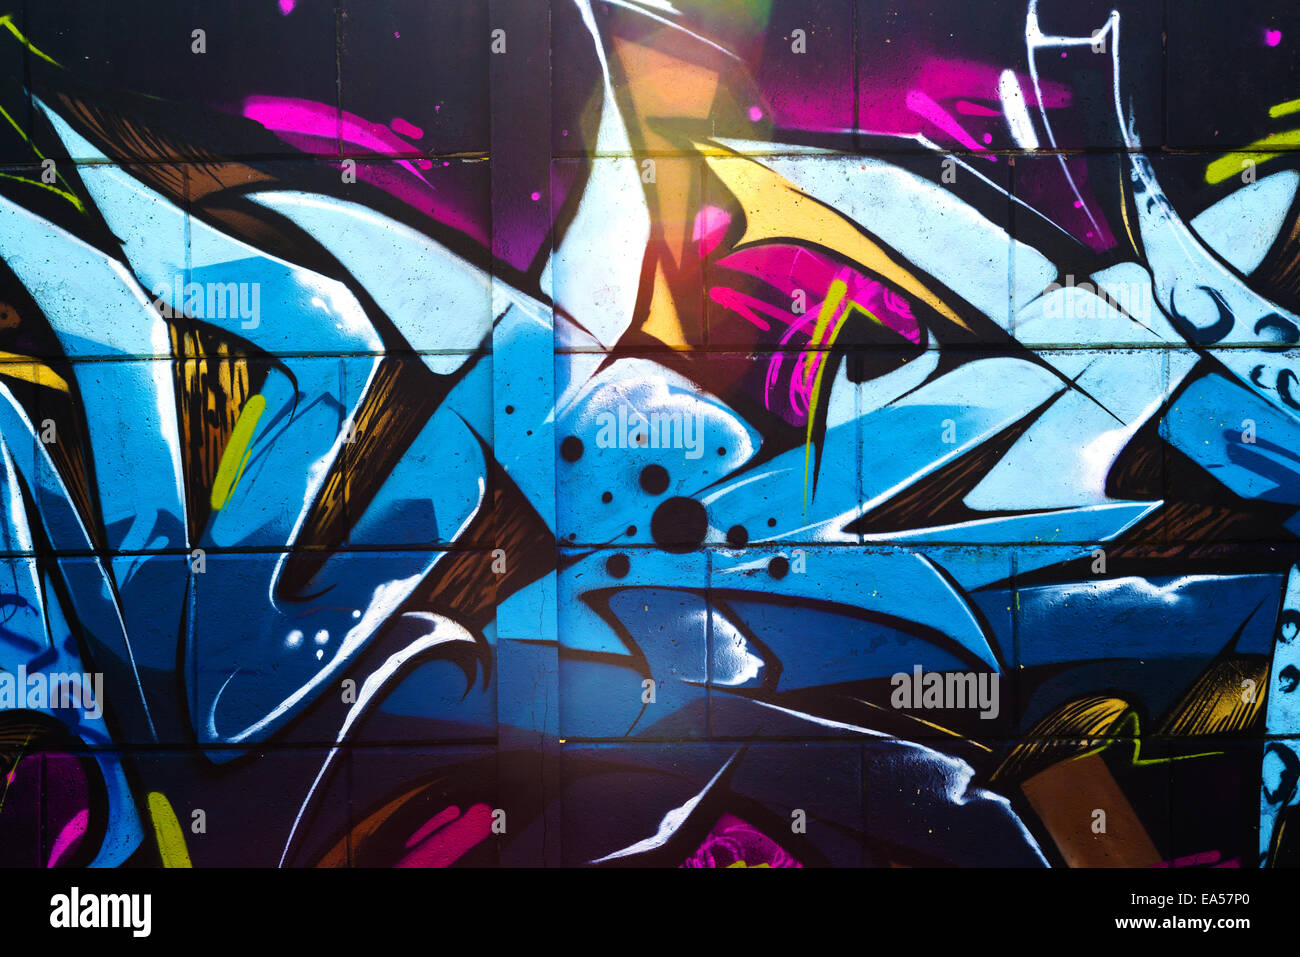 Street art graffiti, multicolore dynamique détail de l'art du graffiti sur le mur. Banque D'Images